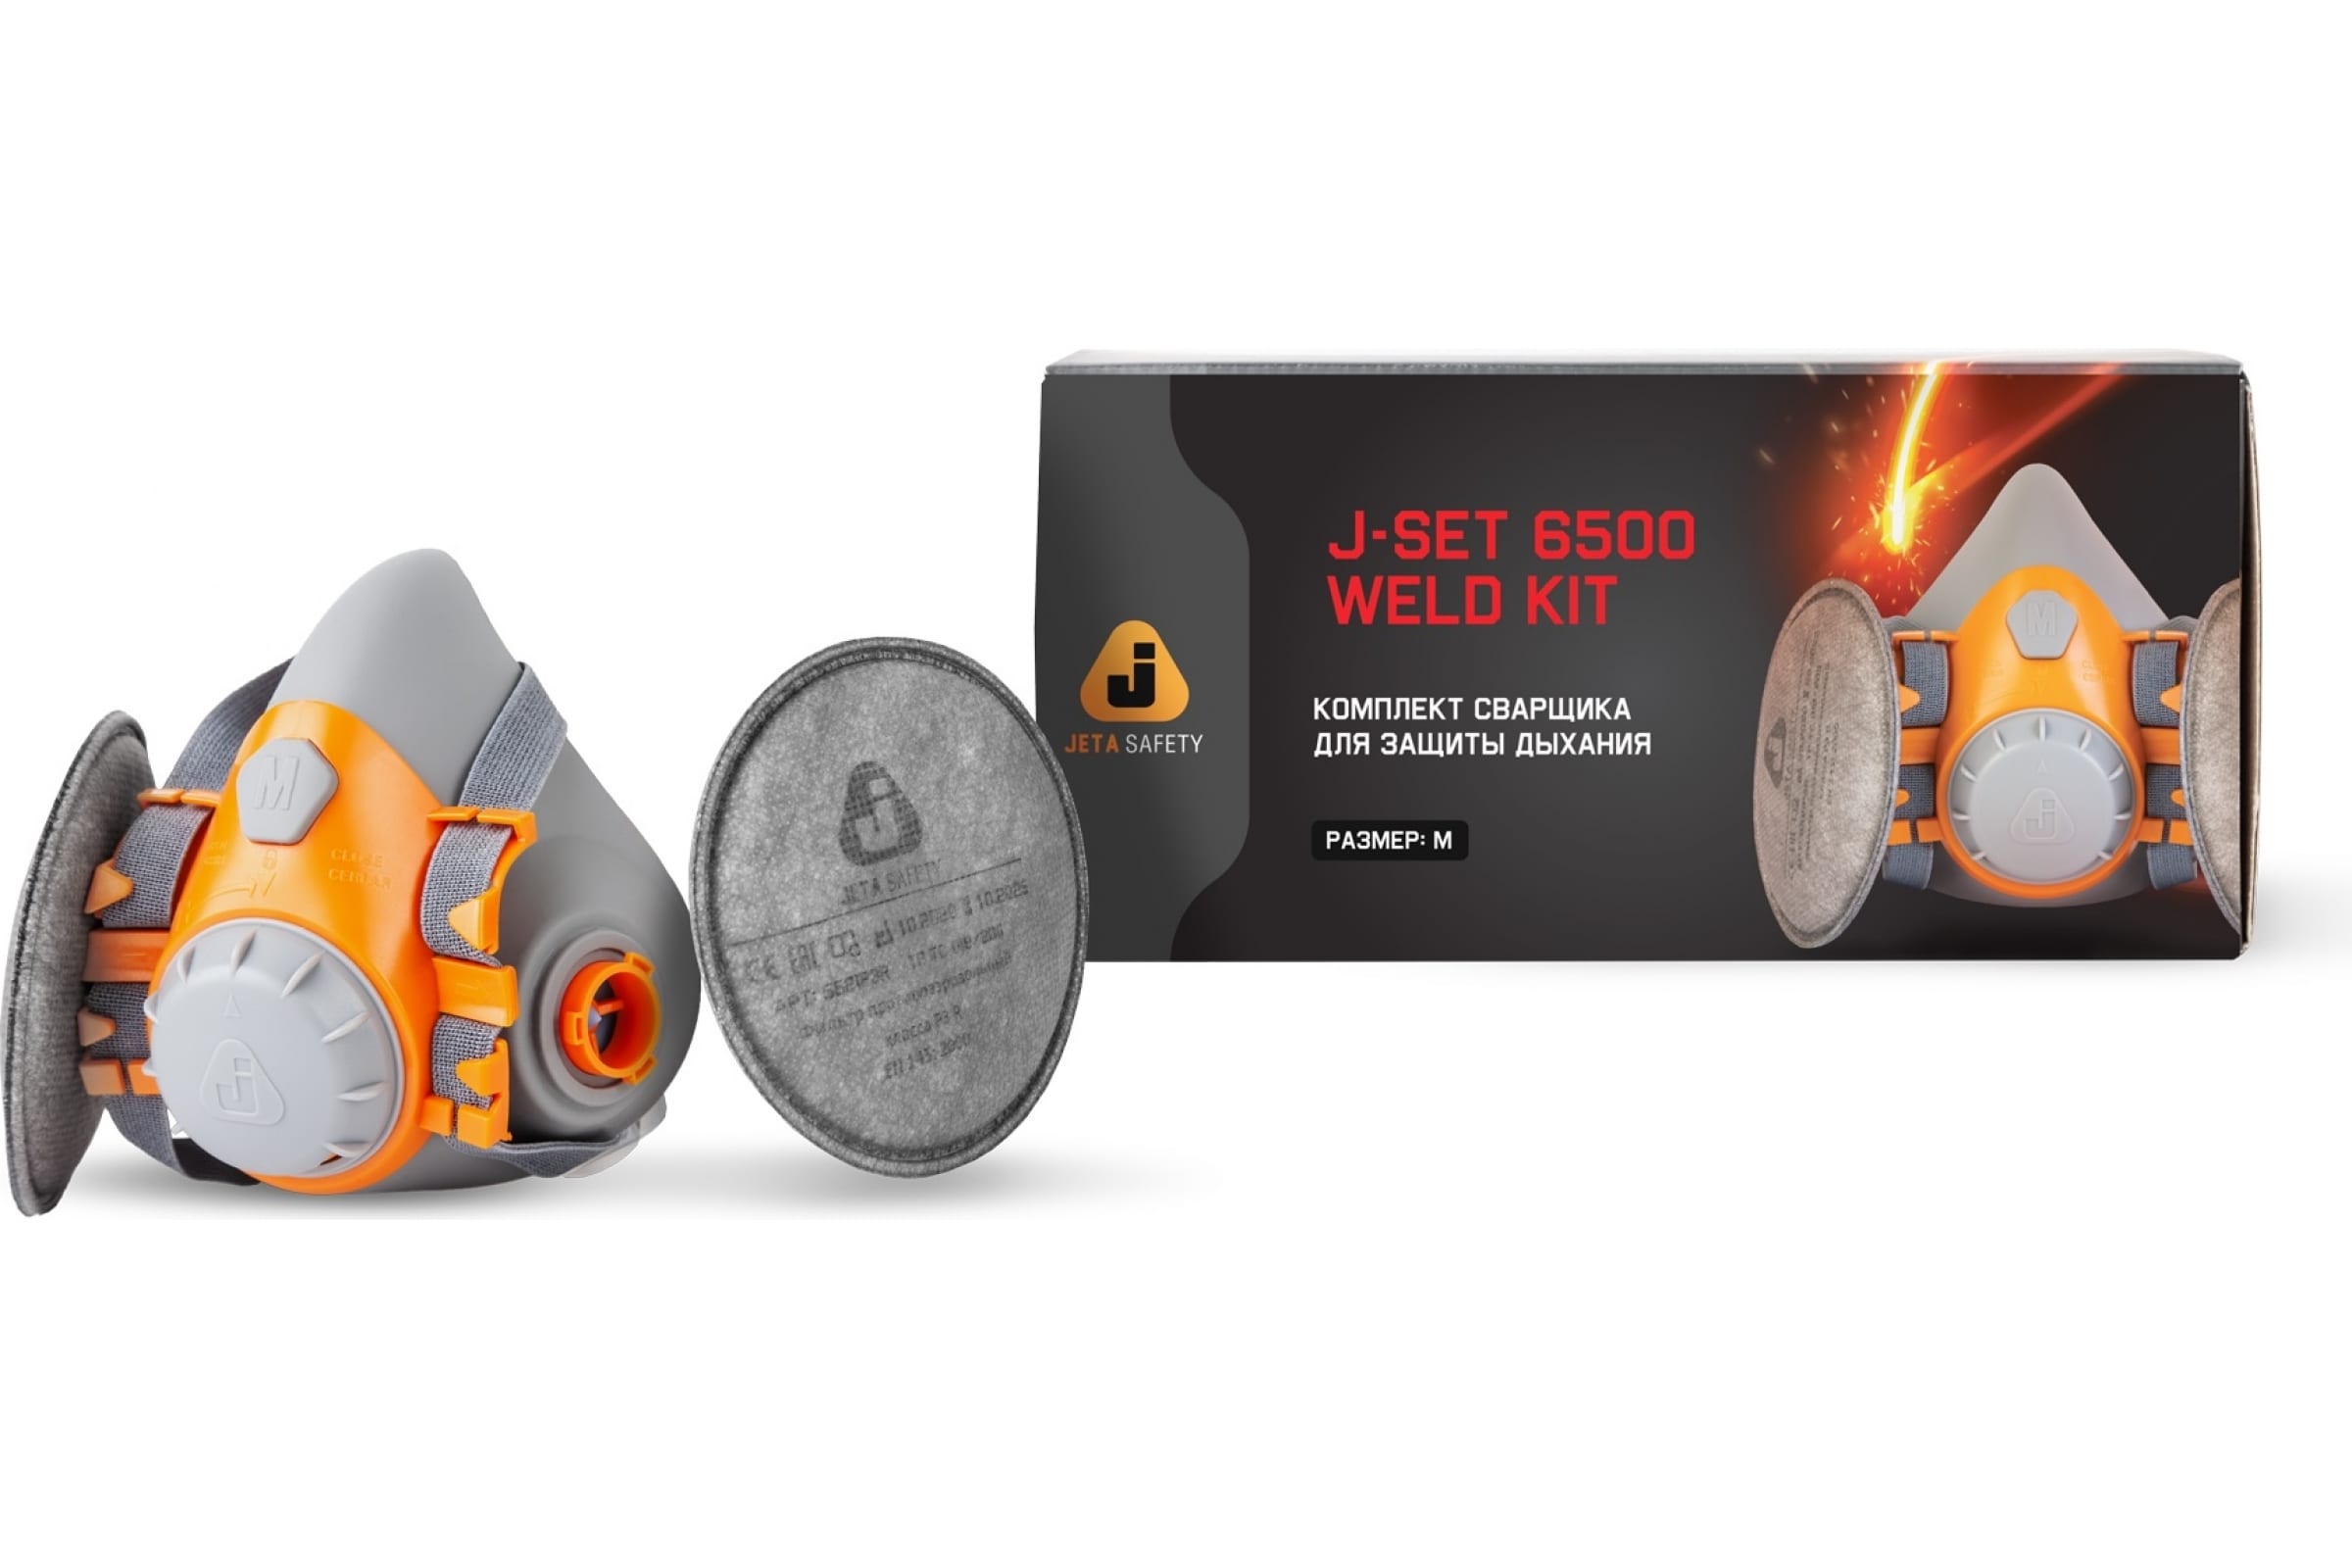 Jeta Safety Комплект для защиты дыхания сварщика WeldKit6500-M jeta safety комплект для защиты дыхания сварщика weldkit6500 m